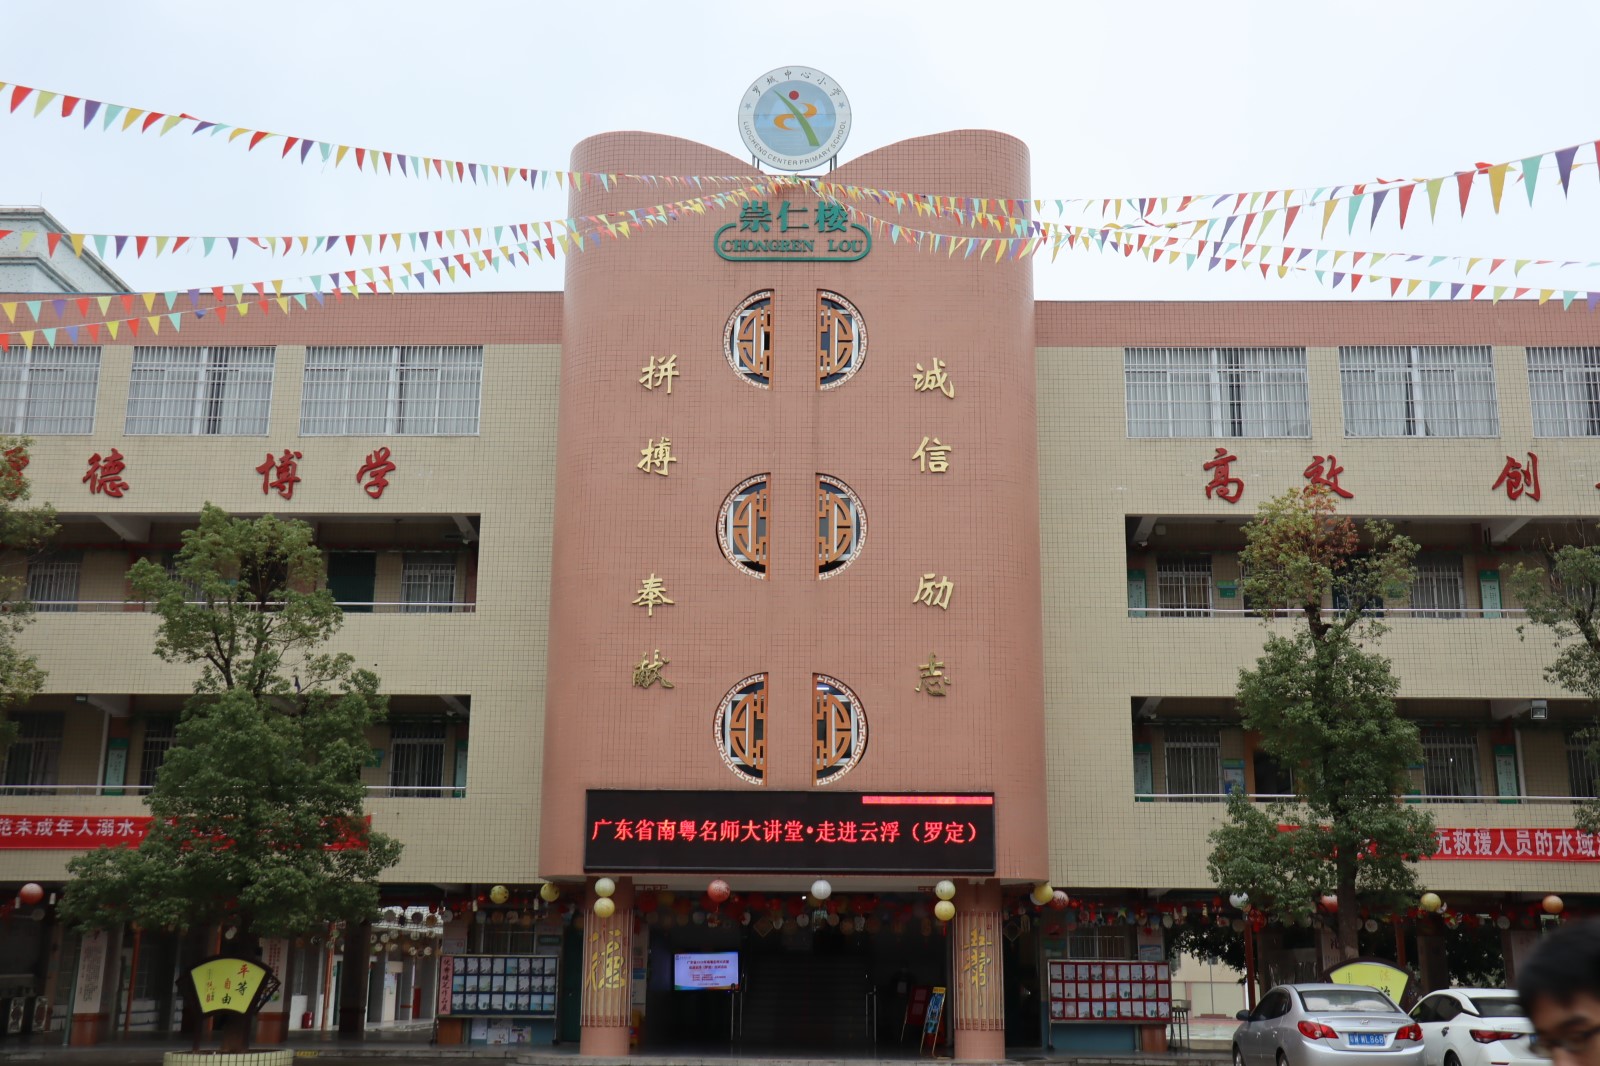 罗定苹塘镇中心小学打造“棋道文化”特色校园